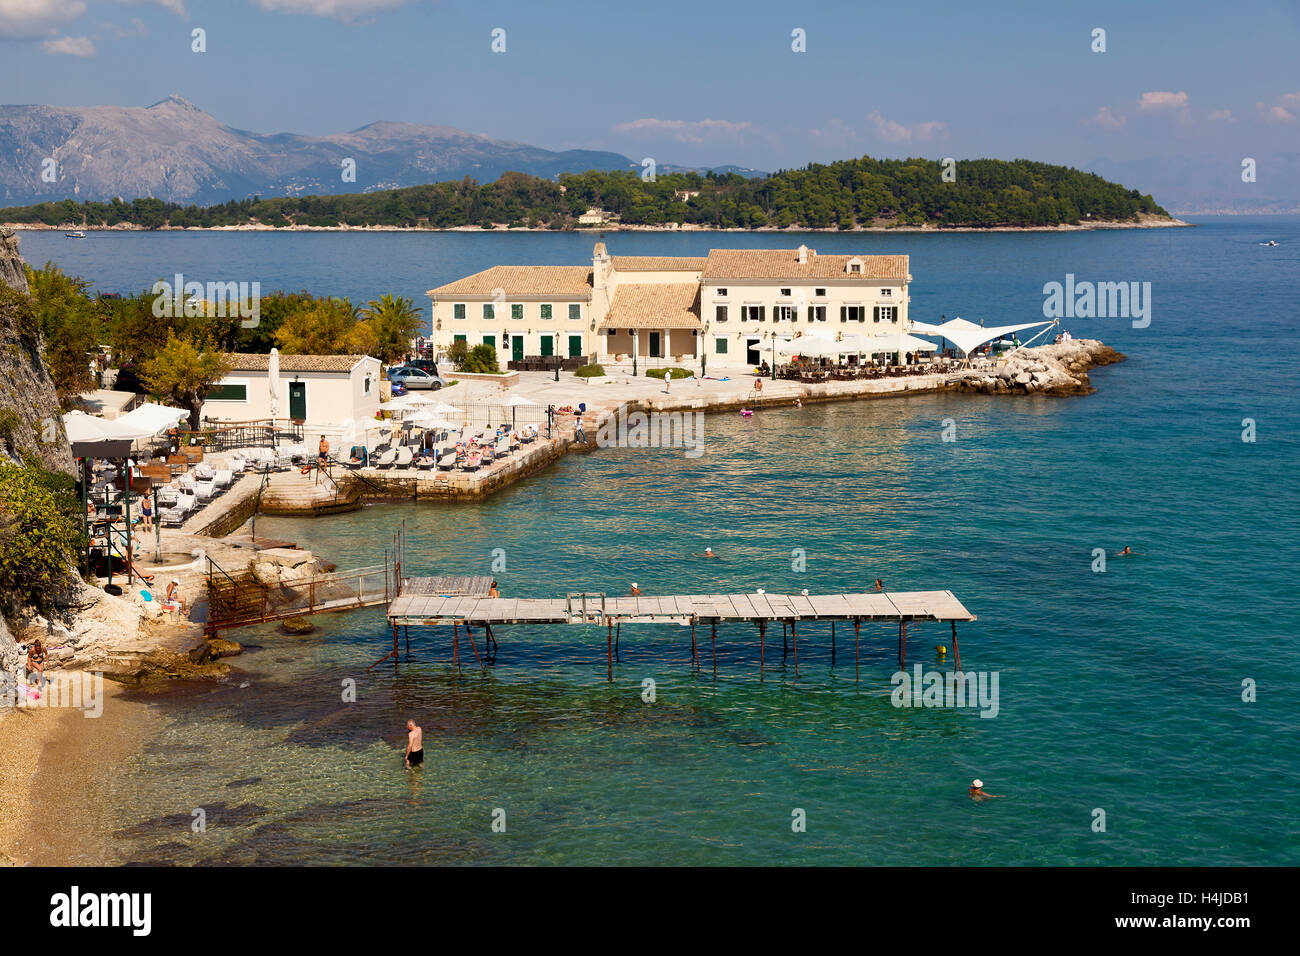 Plage de Corfou, îles Ioniennes, Grèce Grec Banque D'Images